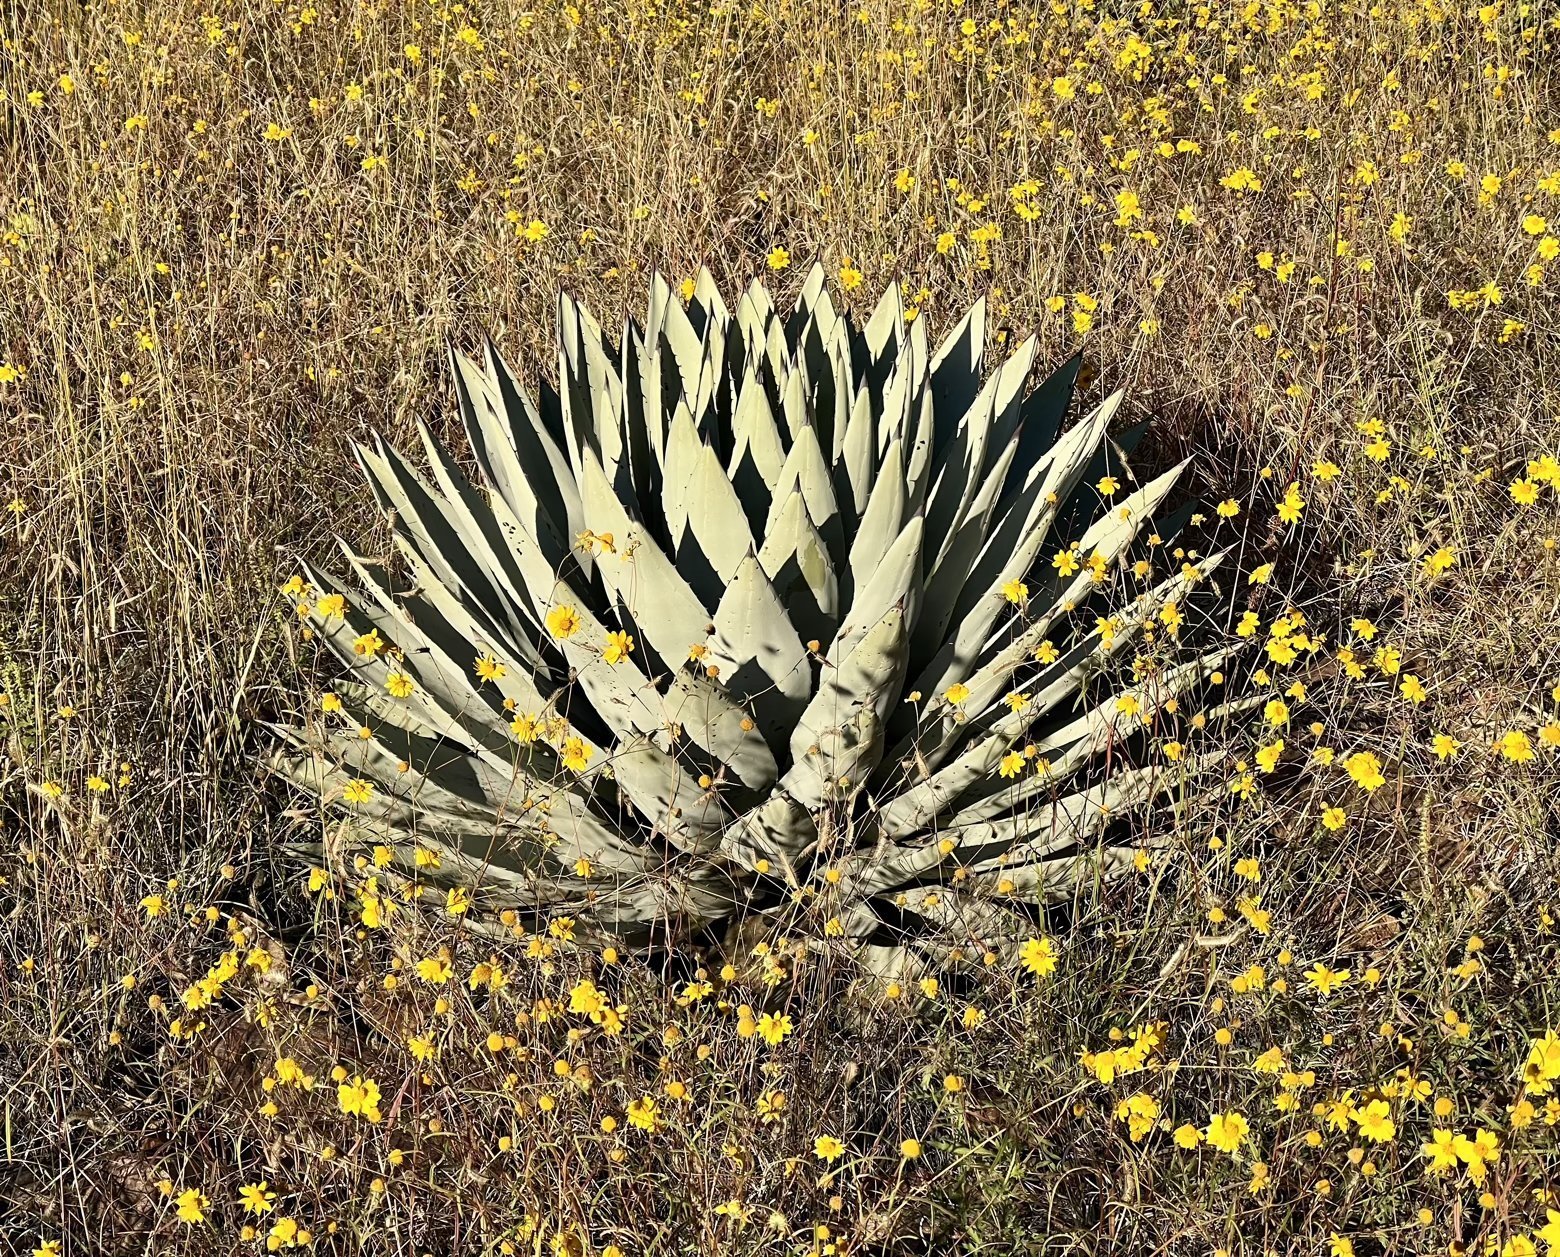 Agave in a field of goldeneye